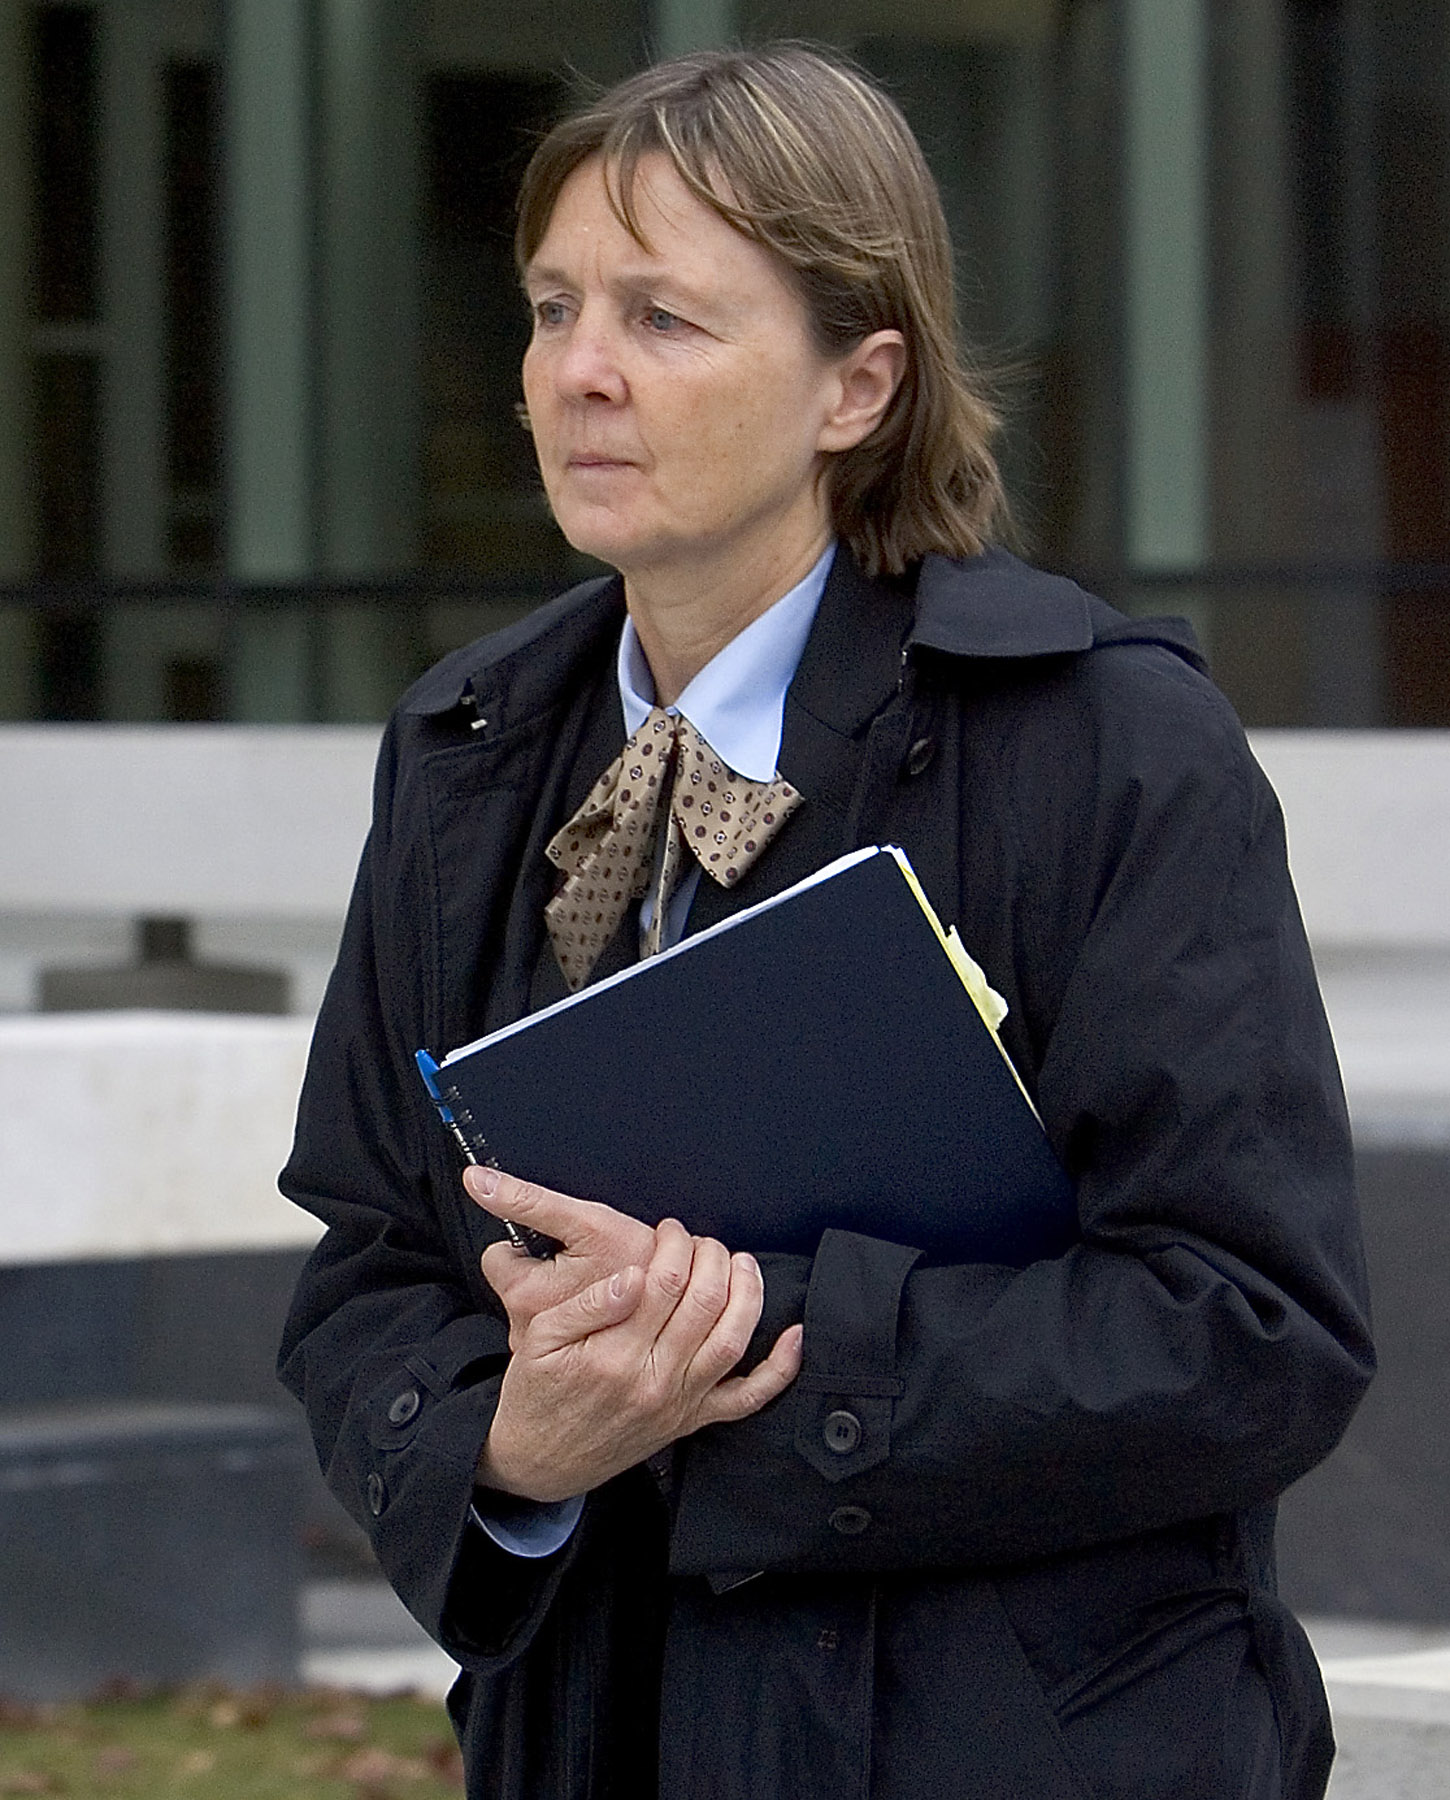 Hon har tidigare försvarat massmördaden Timothy McVeigh och UNA-bombaren. Nu ska advokaten Judy Clarke försvara Jared Lee Loughner när han ställs inför rätta.